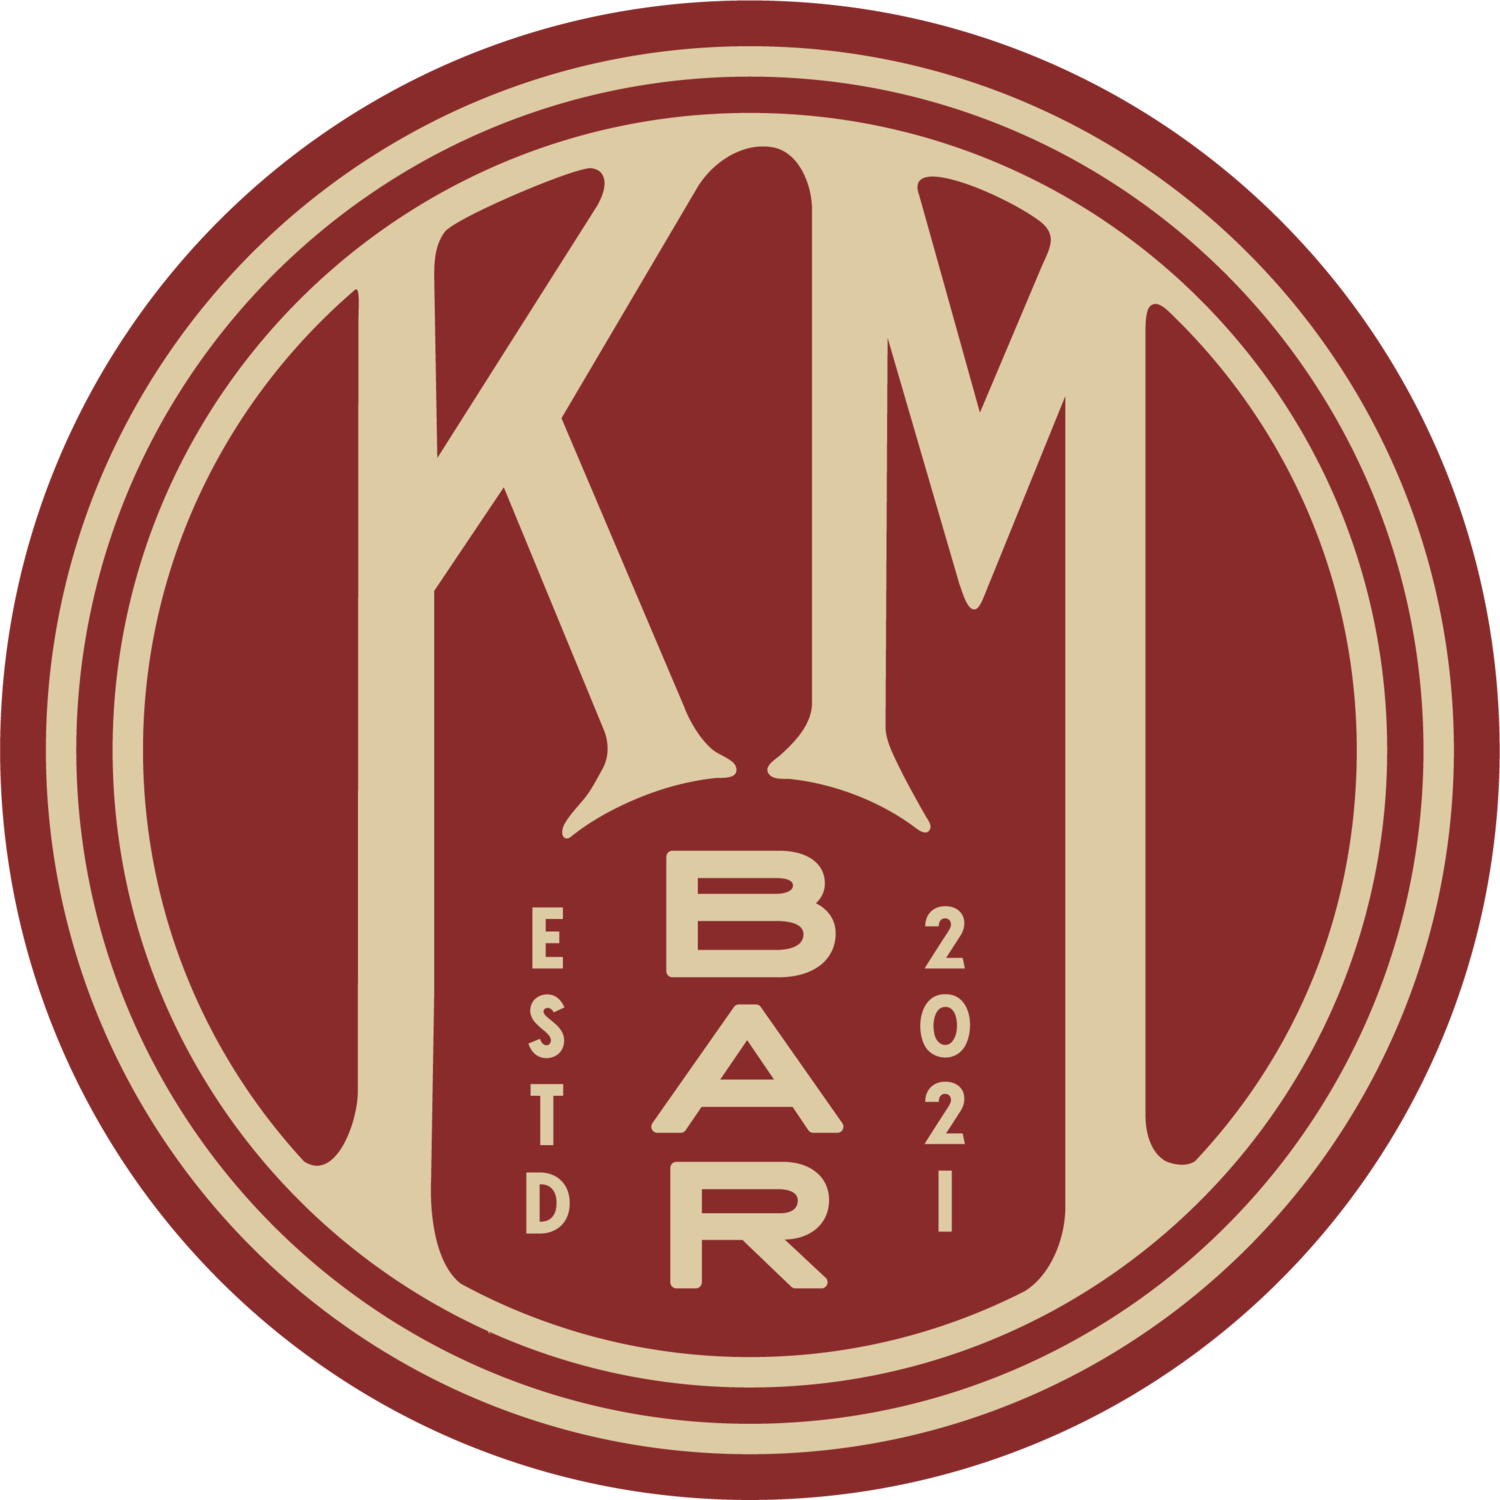 KM Bar